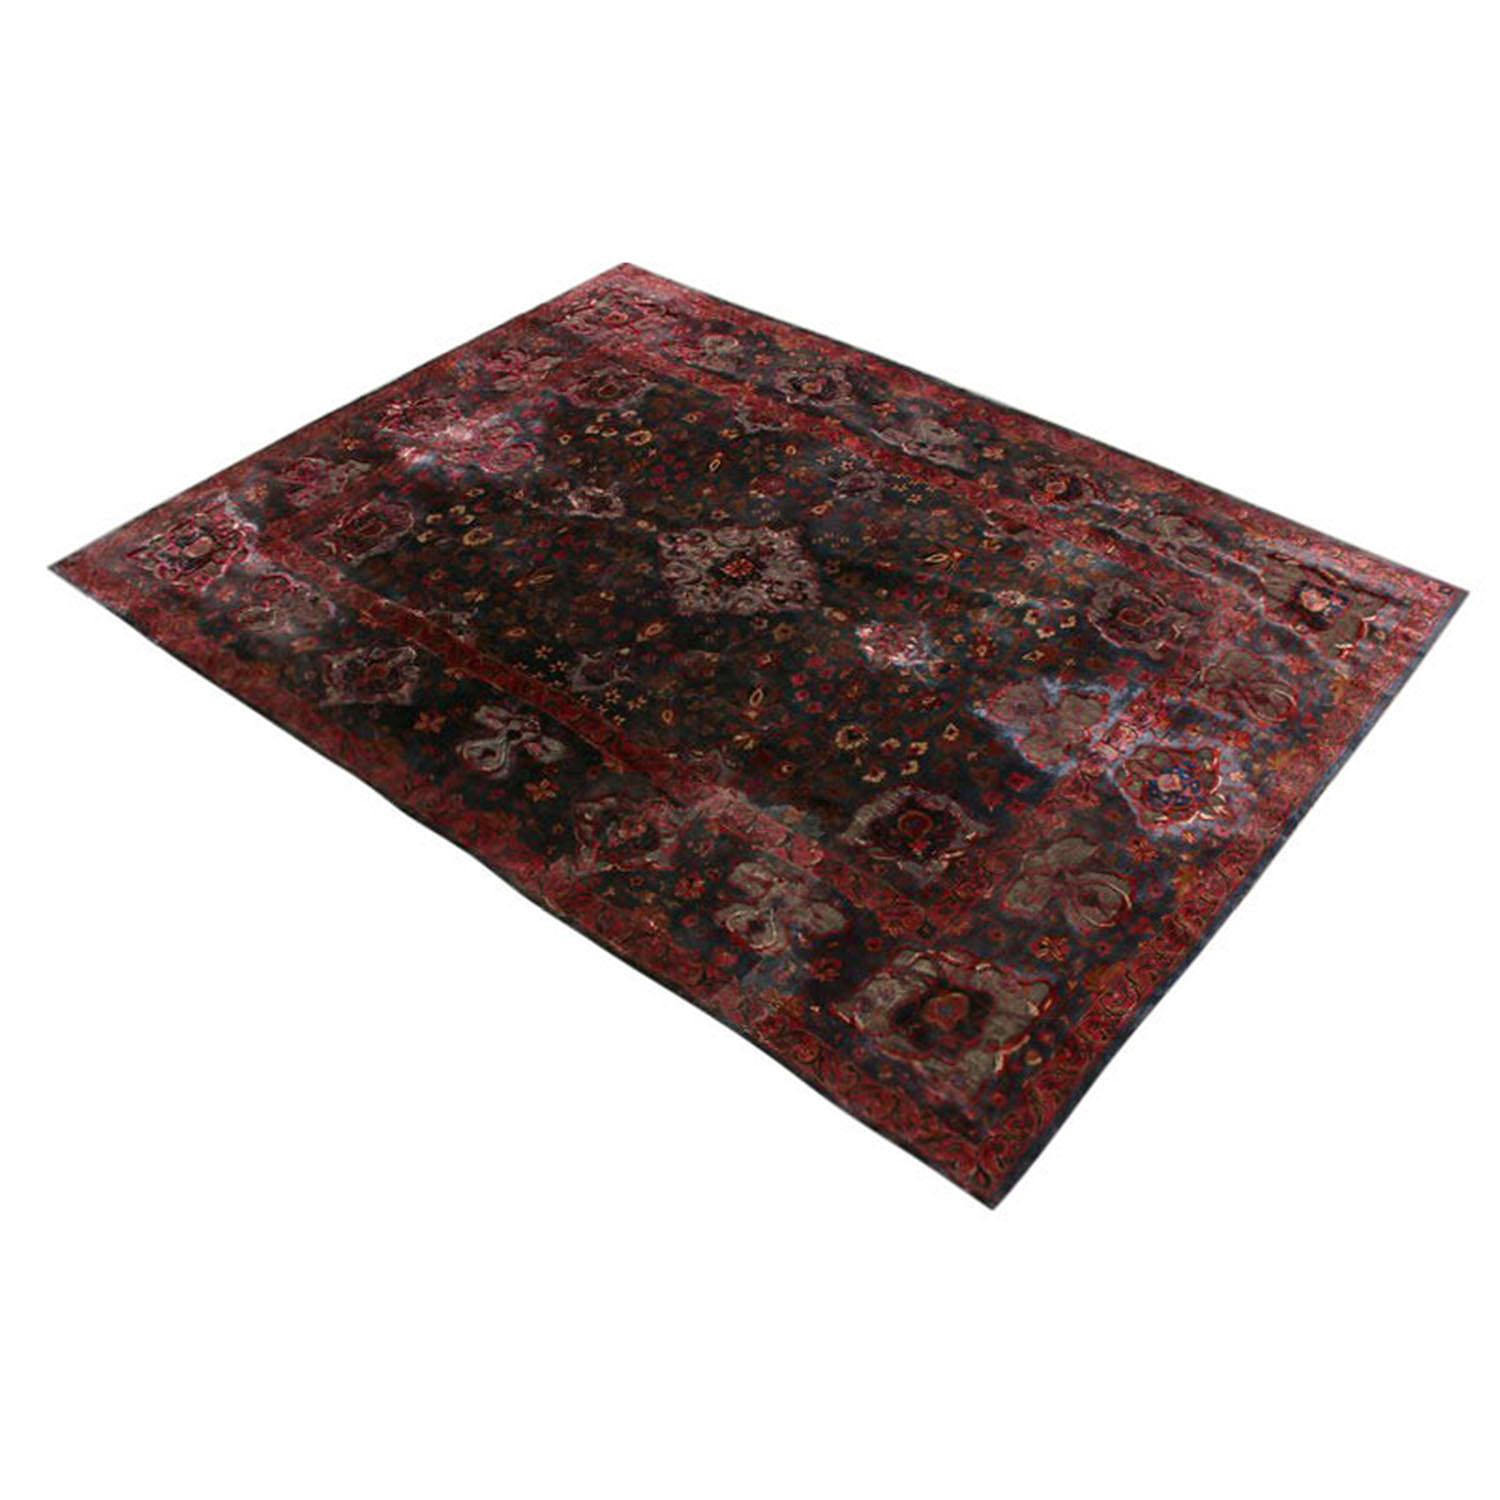 Dieser antike Kashan-Teppich wurde zwischen 1910 und 1920 in Persien handgeknüpft und besticht durch seine ansprechende Größe, die einzigartige Farbgebung und die glänzende Metall-Seiden-Mischung, die die reichen Violett- und Blautöne ergänzt.